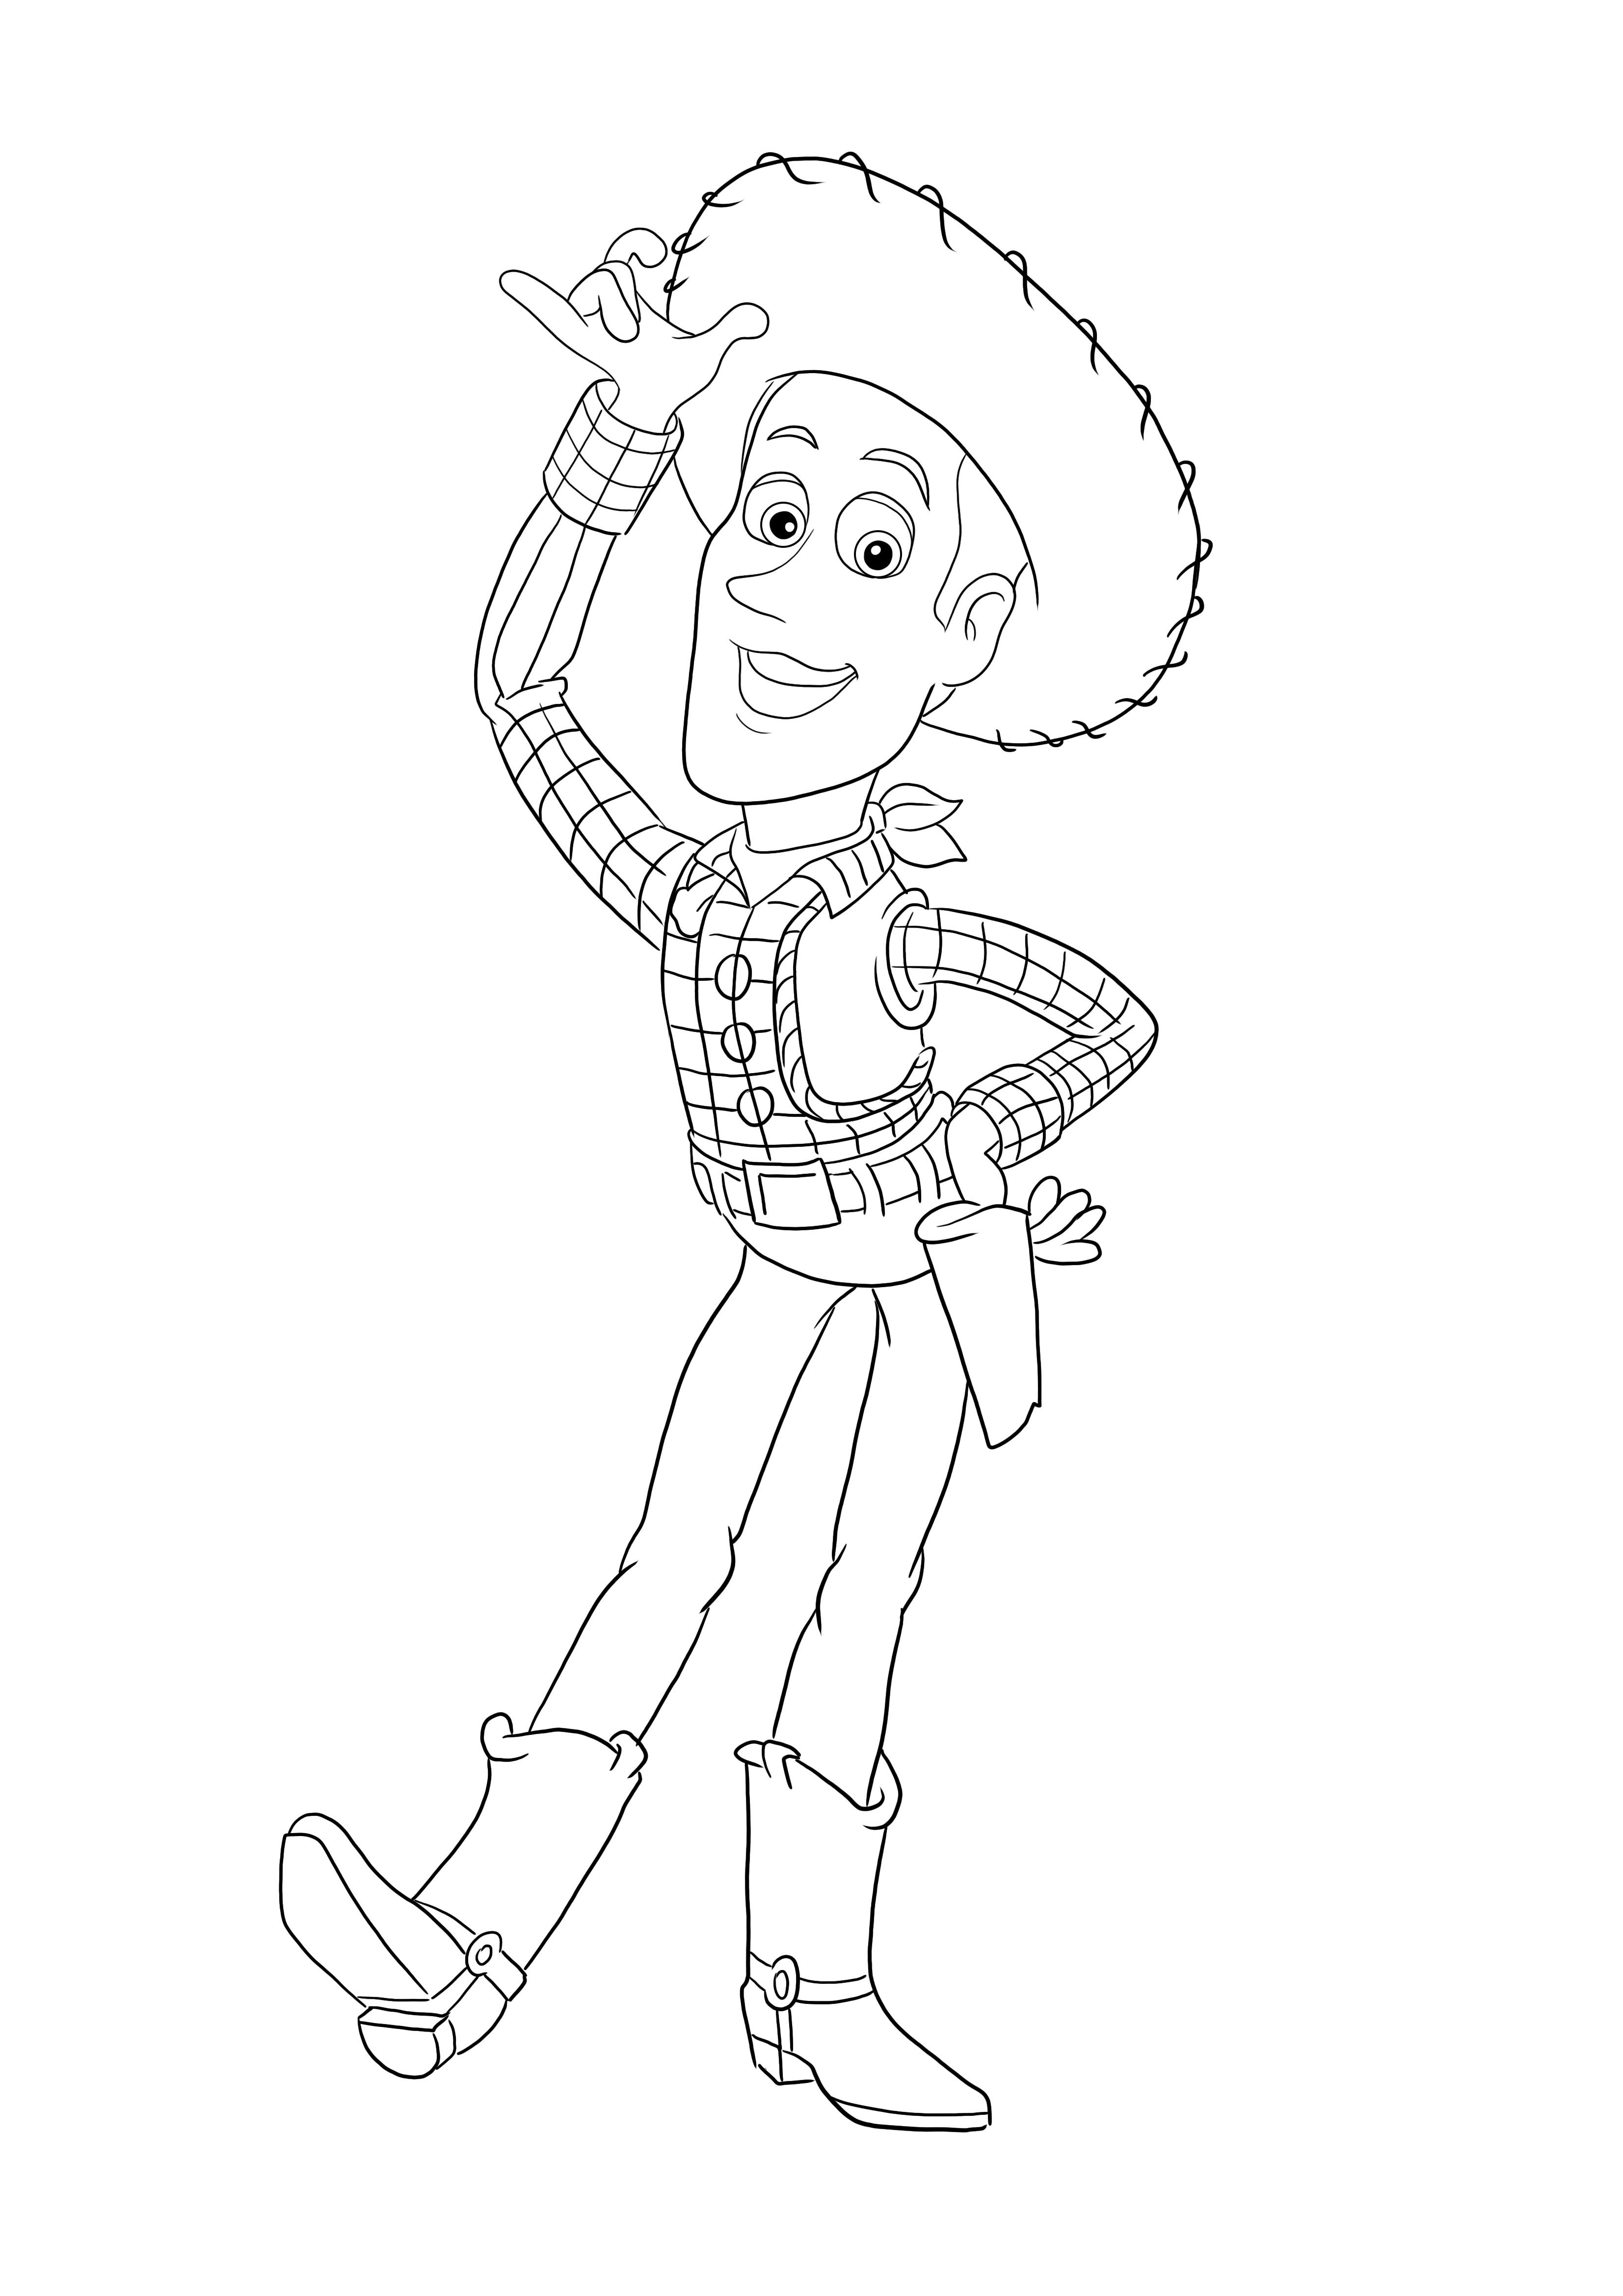 Kleurplaten van Woody uit Toy Story gratis te printen of te downloaden voor alle leeftijden kleurplaat